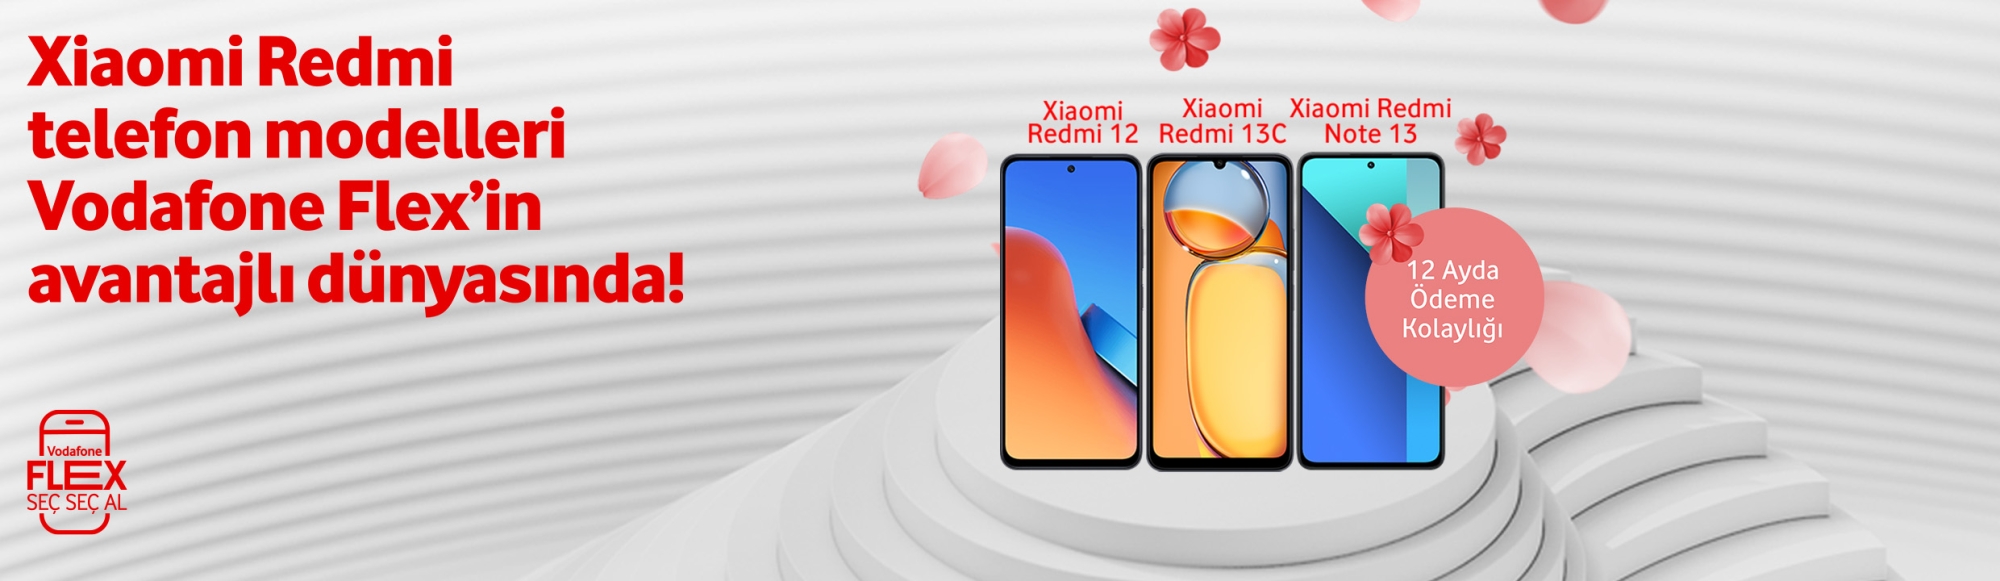 Xiaomi Telefonlar - telefonlar tab